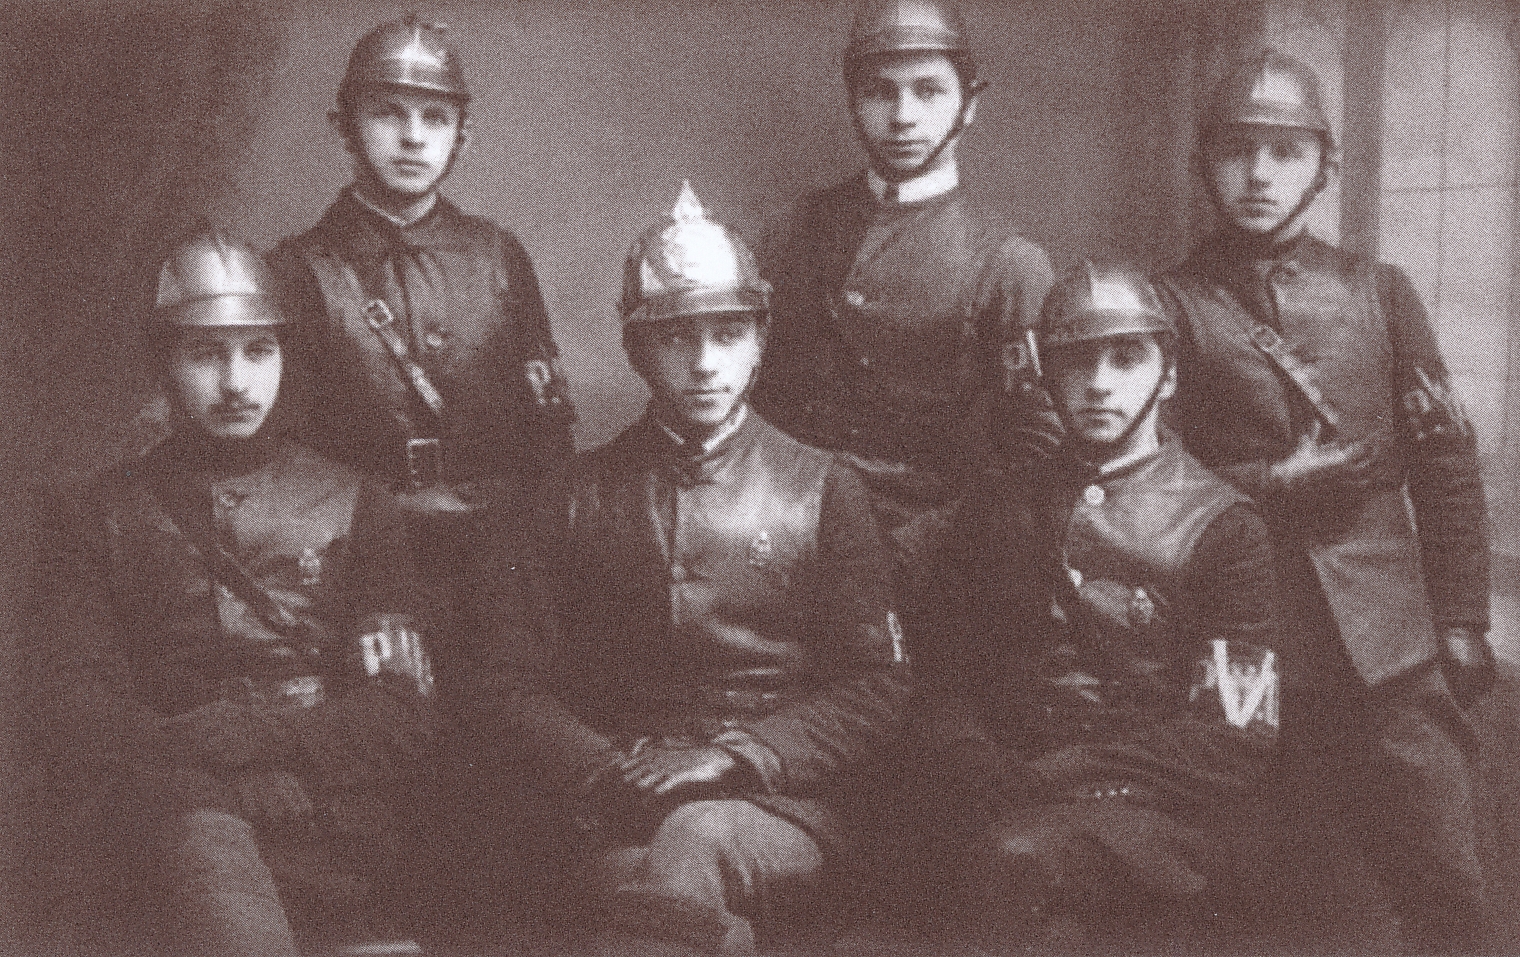 Savanorių ugniagesių būrys. Panevėžys, 1924. Nuotrauka iš: Žvilgsnis į praeitį. Panevėžys, 2021. P. 211